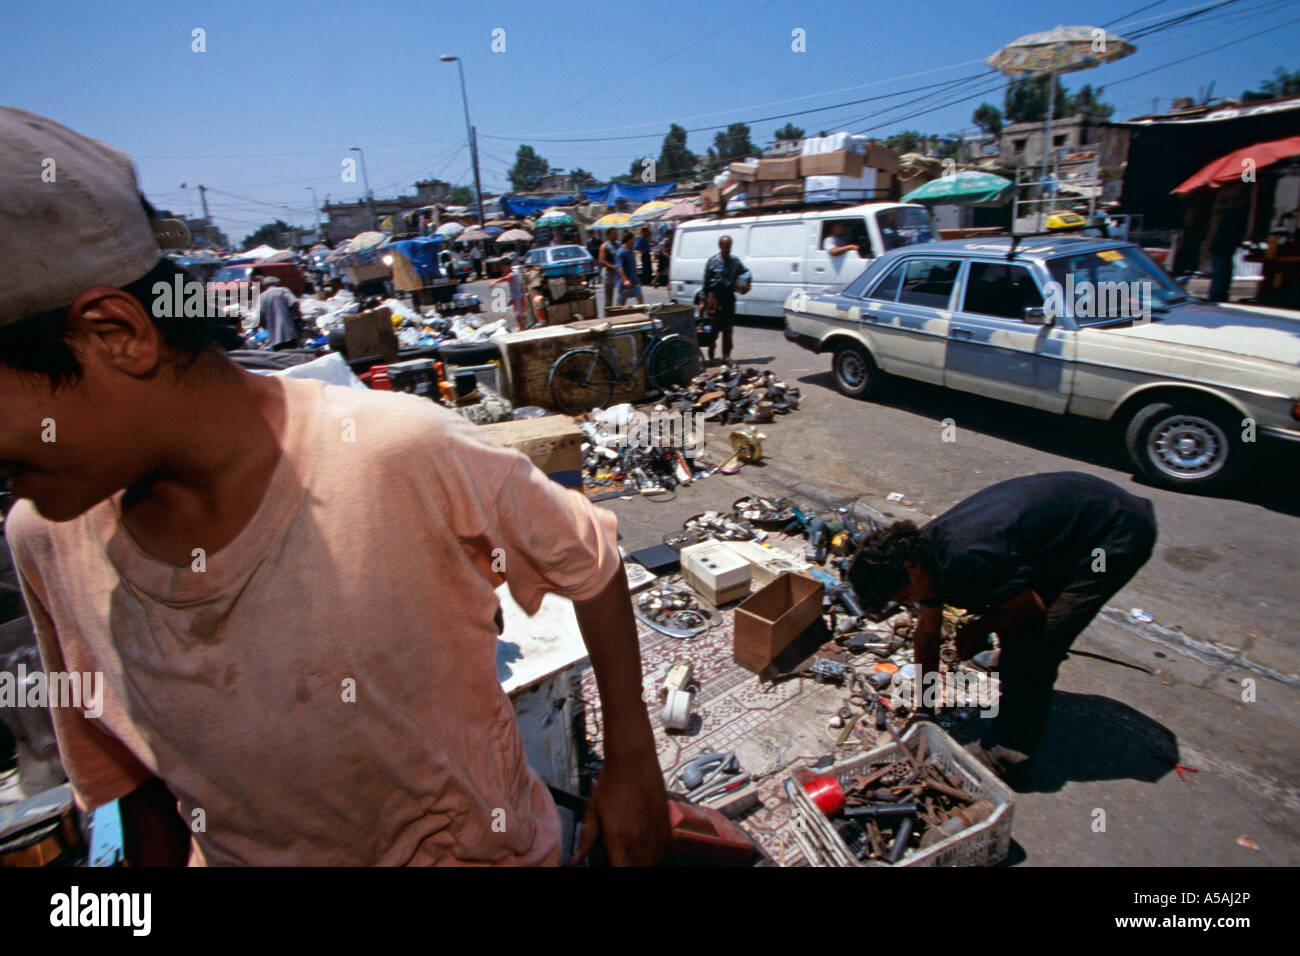 Vendeurs à leur vente de décrochage d'occasion outils et pièces mécaniques dans le camp de réfugiés de Chatila au Liban Beyrouth Banque D'Images